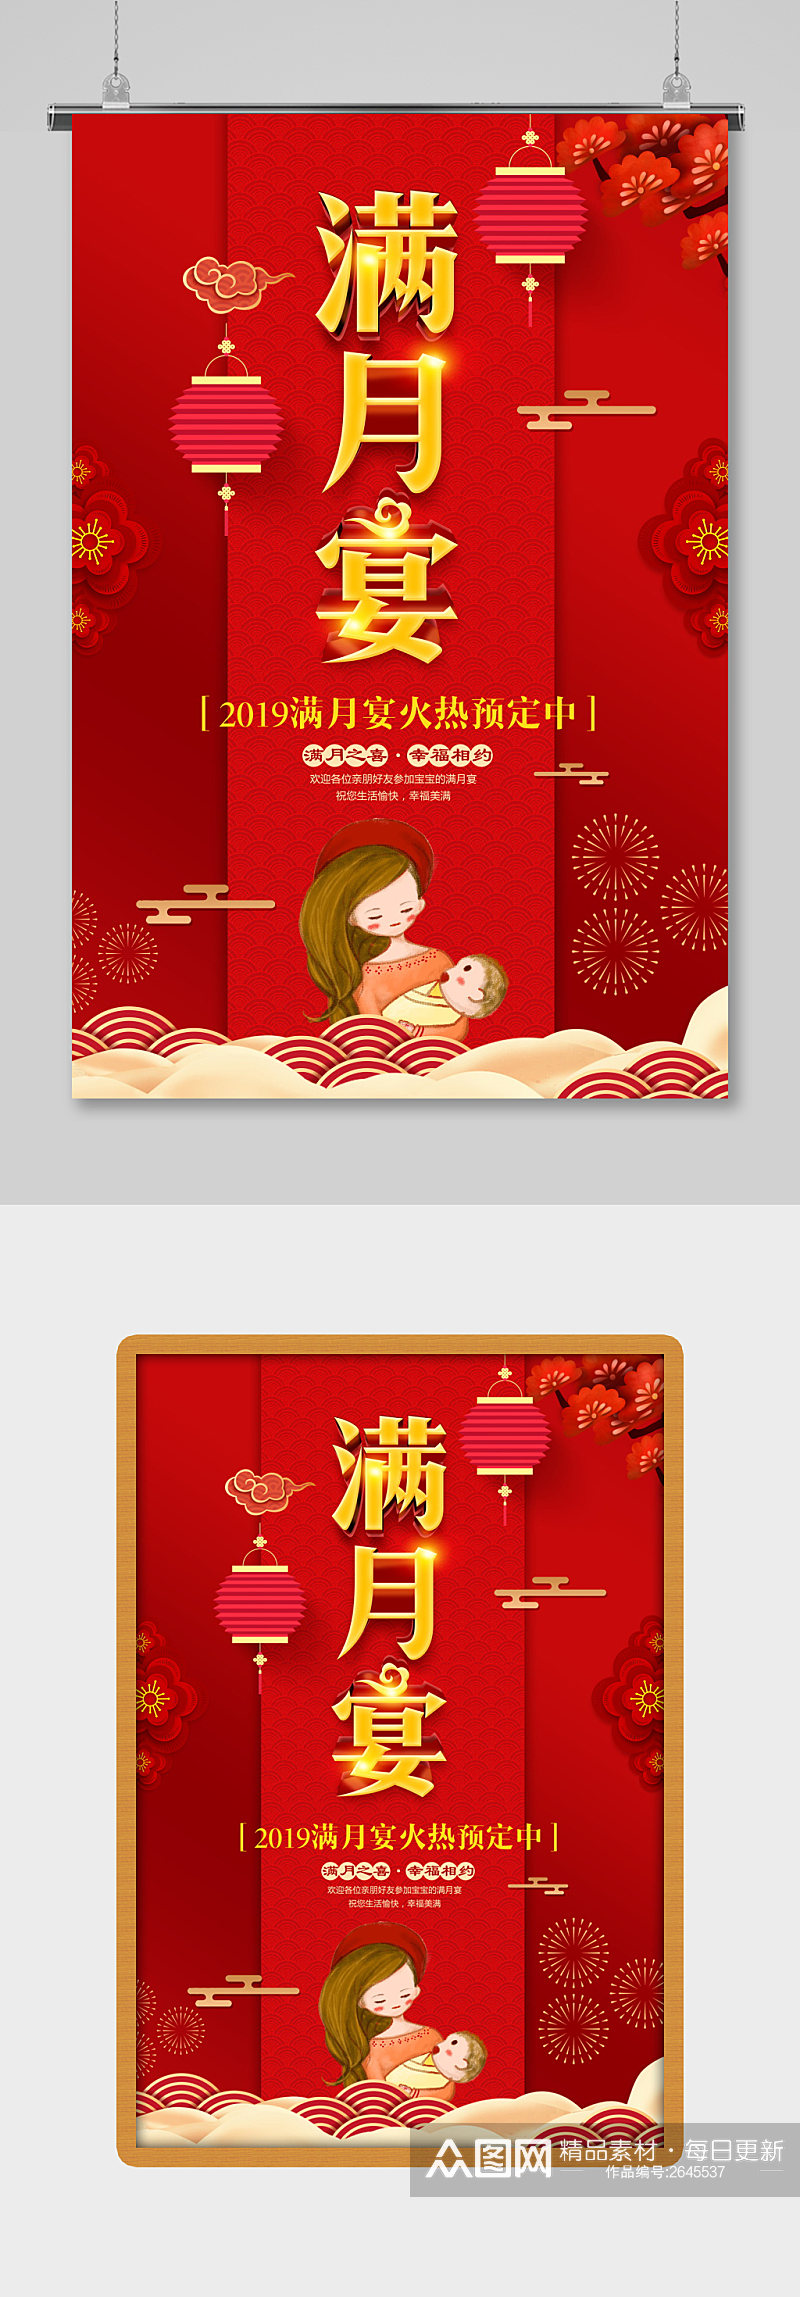 红色满月宴海报设计素材